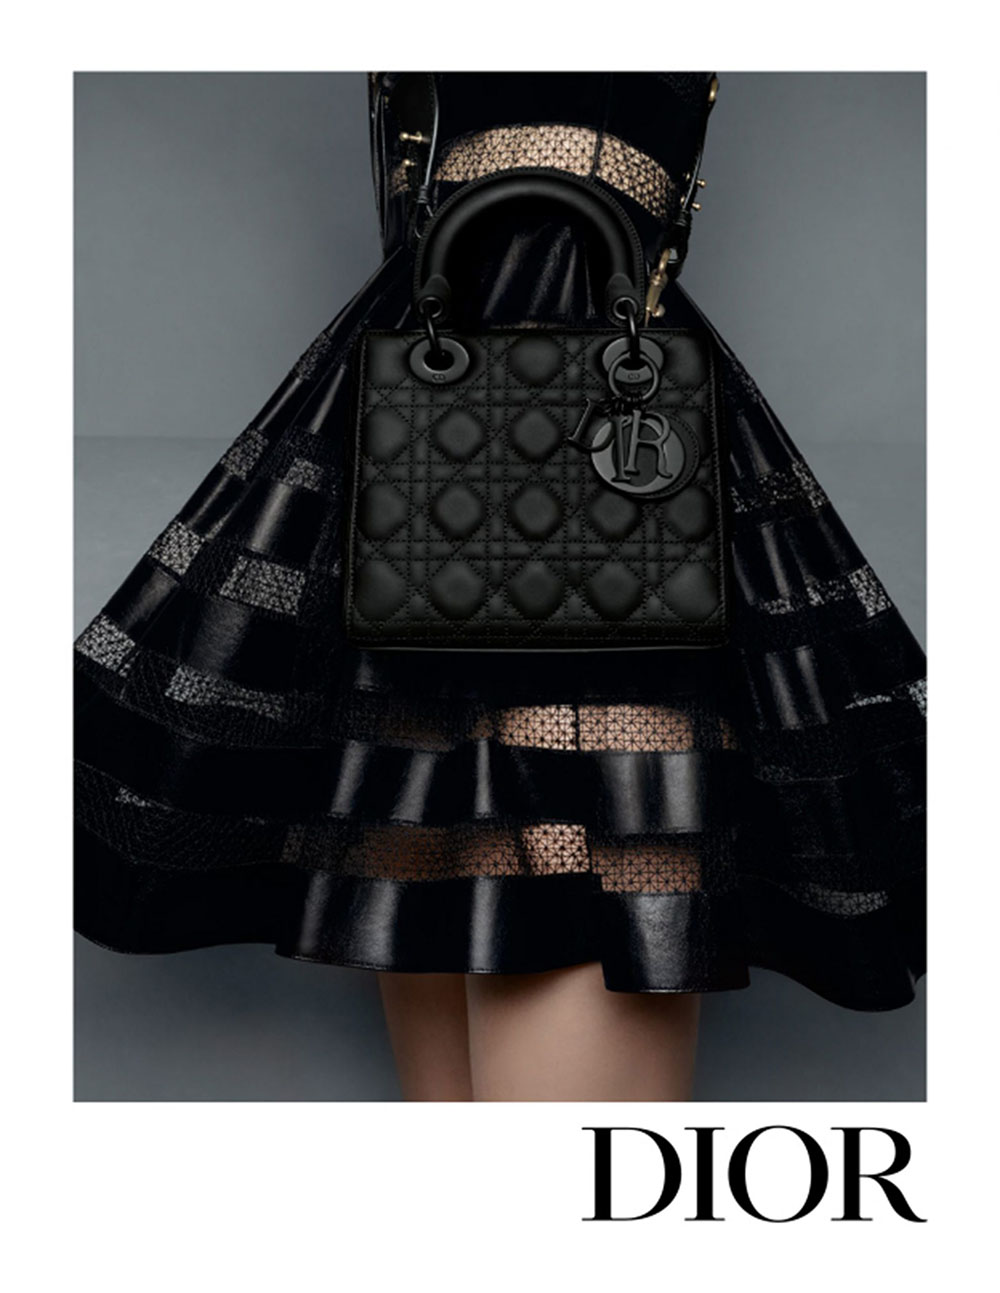 Dior Pre-Fall 2020 Campaign